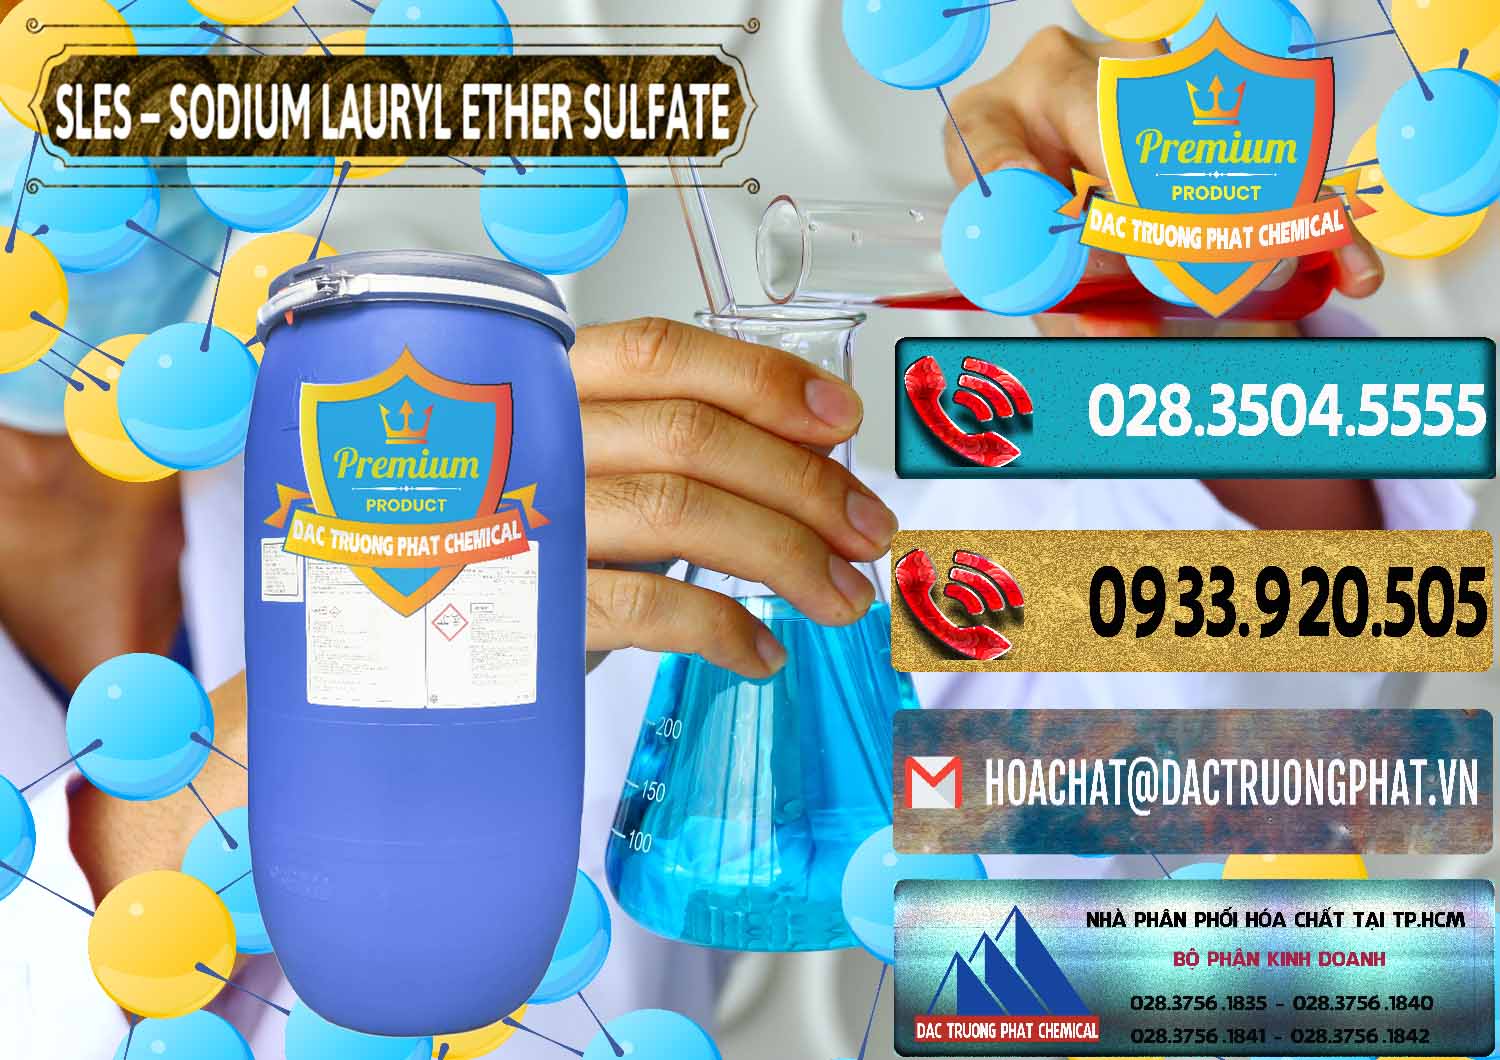 Cty chuyên cung cấp và bán Chất Tạo Bọt Sles - Sodium Lauryl Ether Sulphate Kao Indonesia - 0046 - Công ty chuyên cung cấp và bán hóa chất tại TP.HCM - hoachatdetnhuom.com